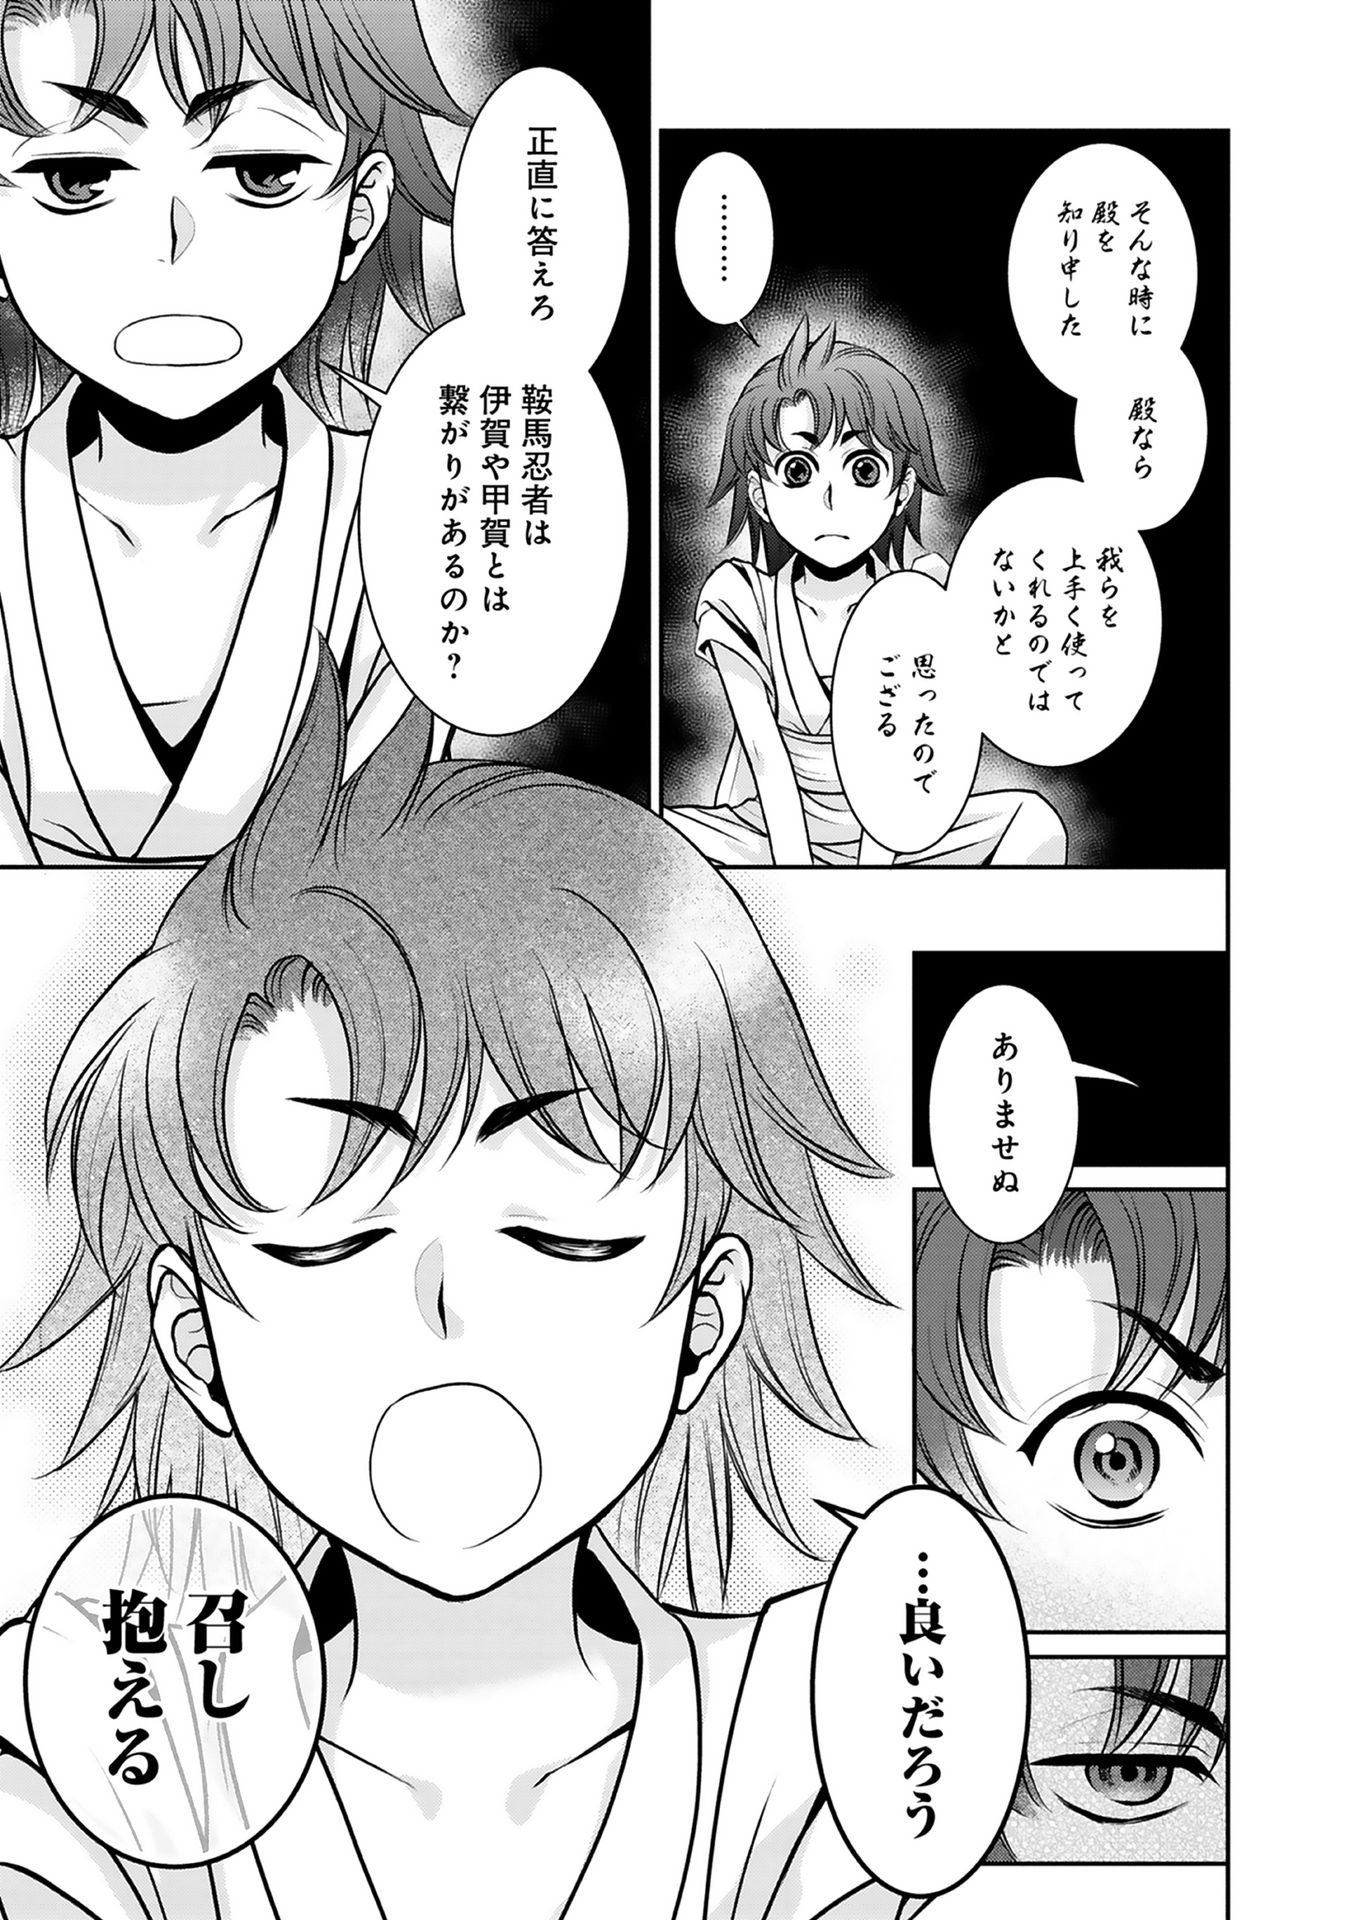 Afumi no Umi – Minamo ga Yureru Toki - Chapter 4 - Page 6